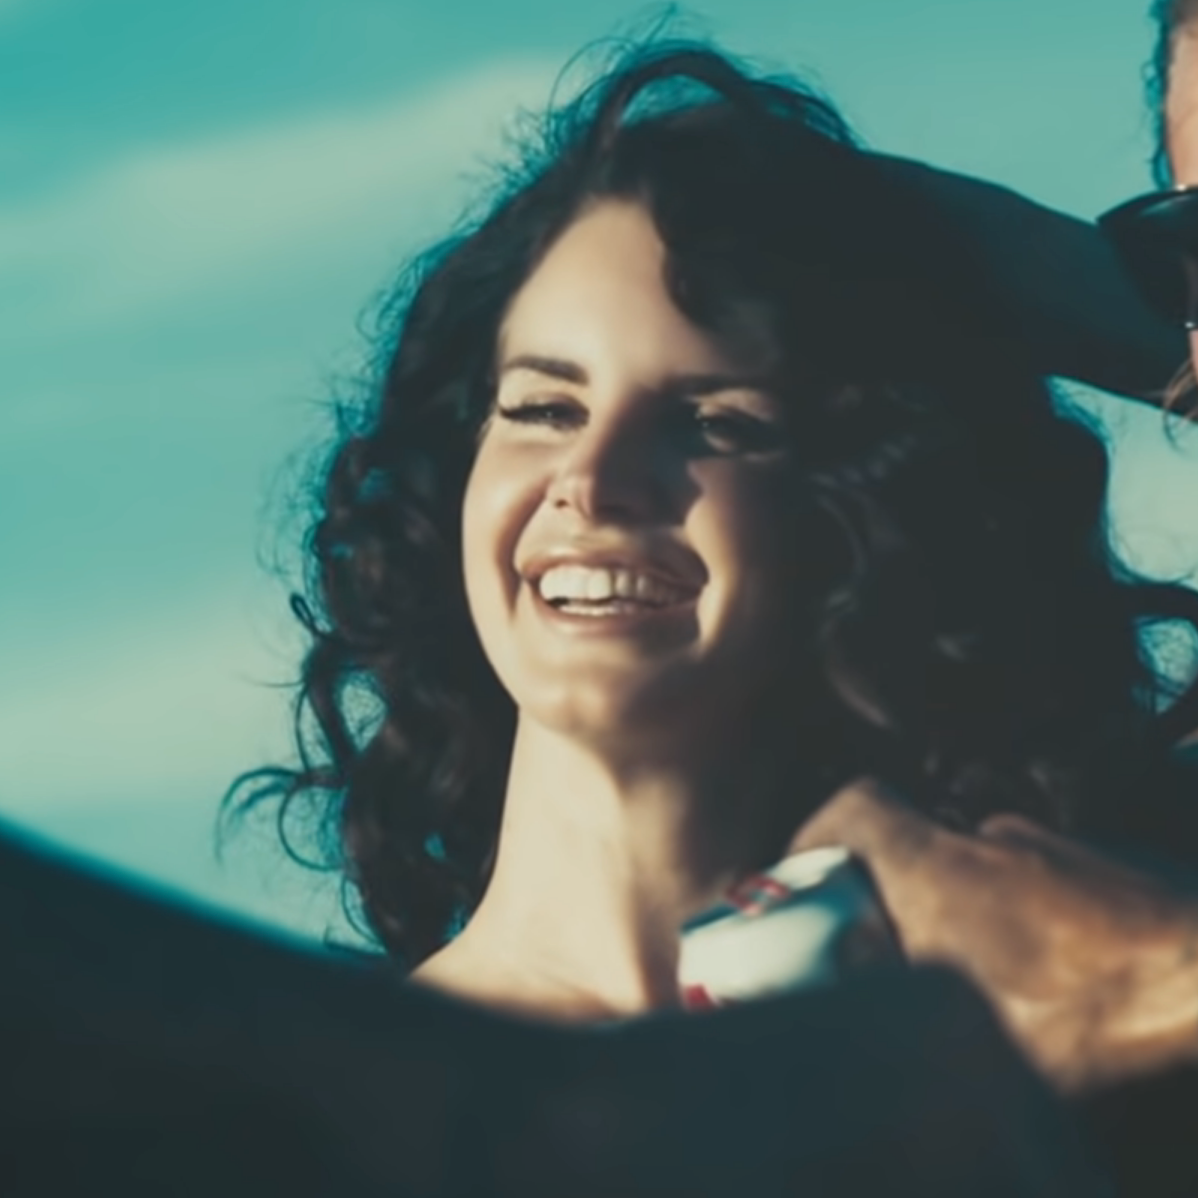 Lana Del Radio: Lana Del Rey's Songs Get Spliced With Movies